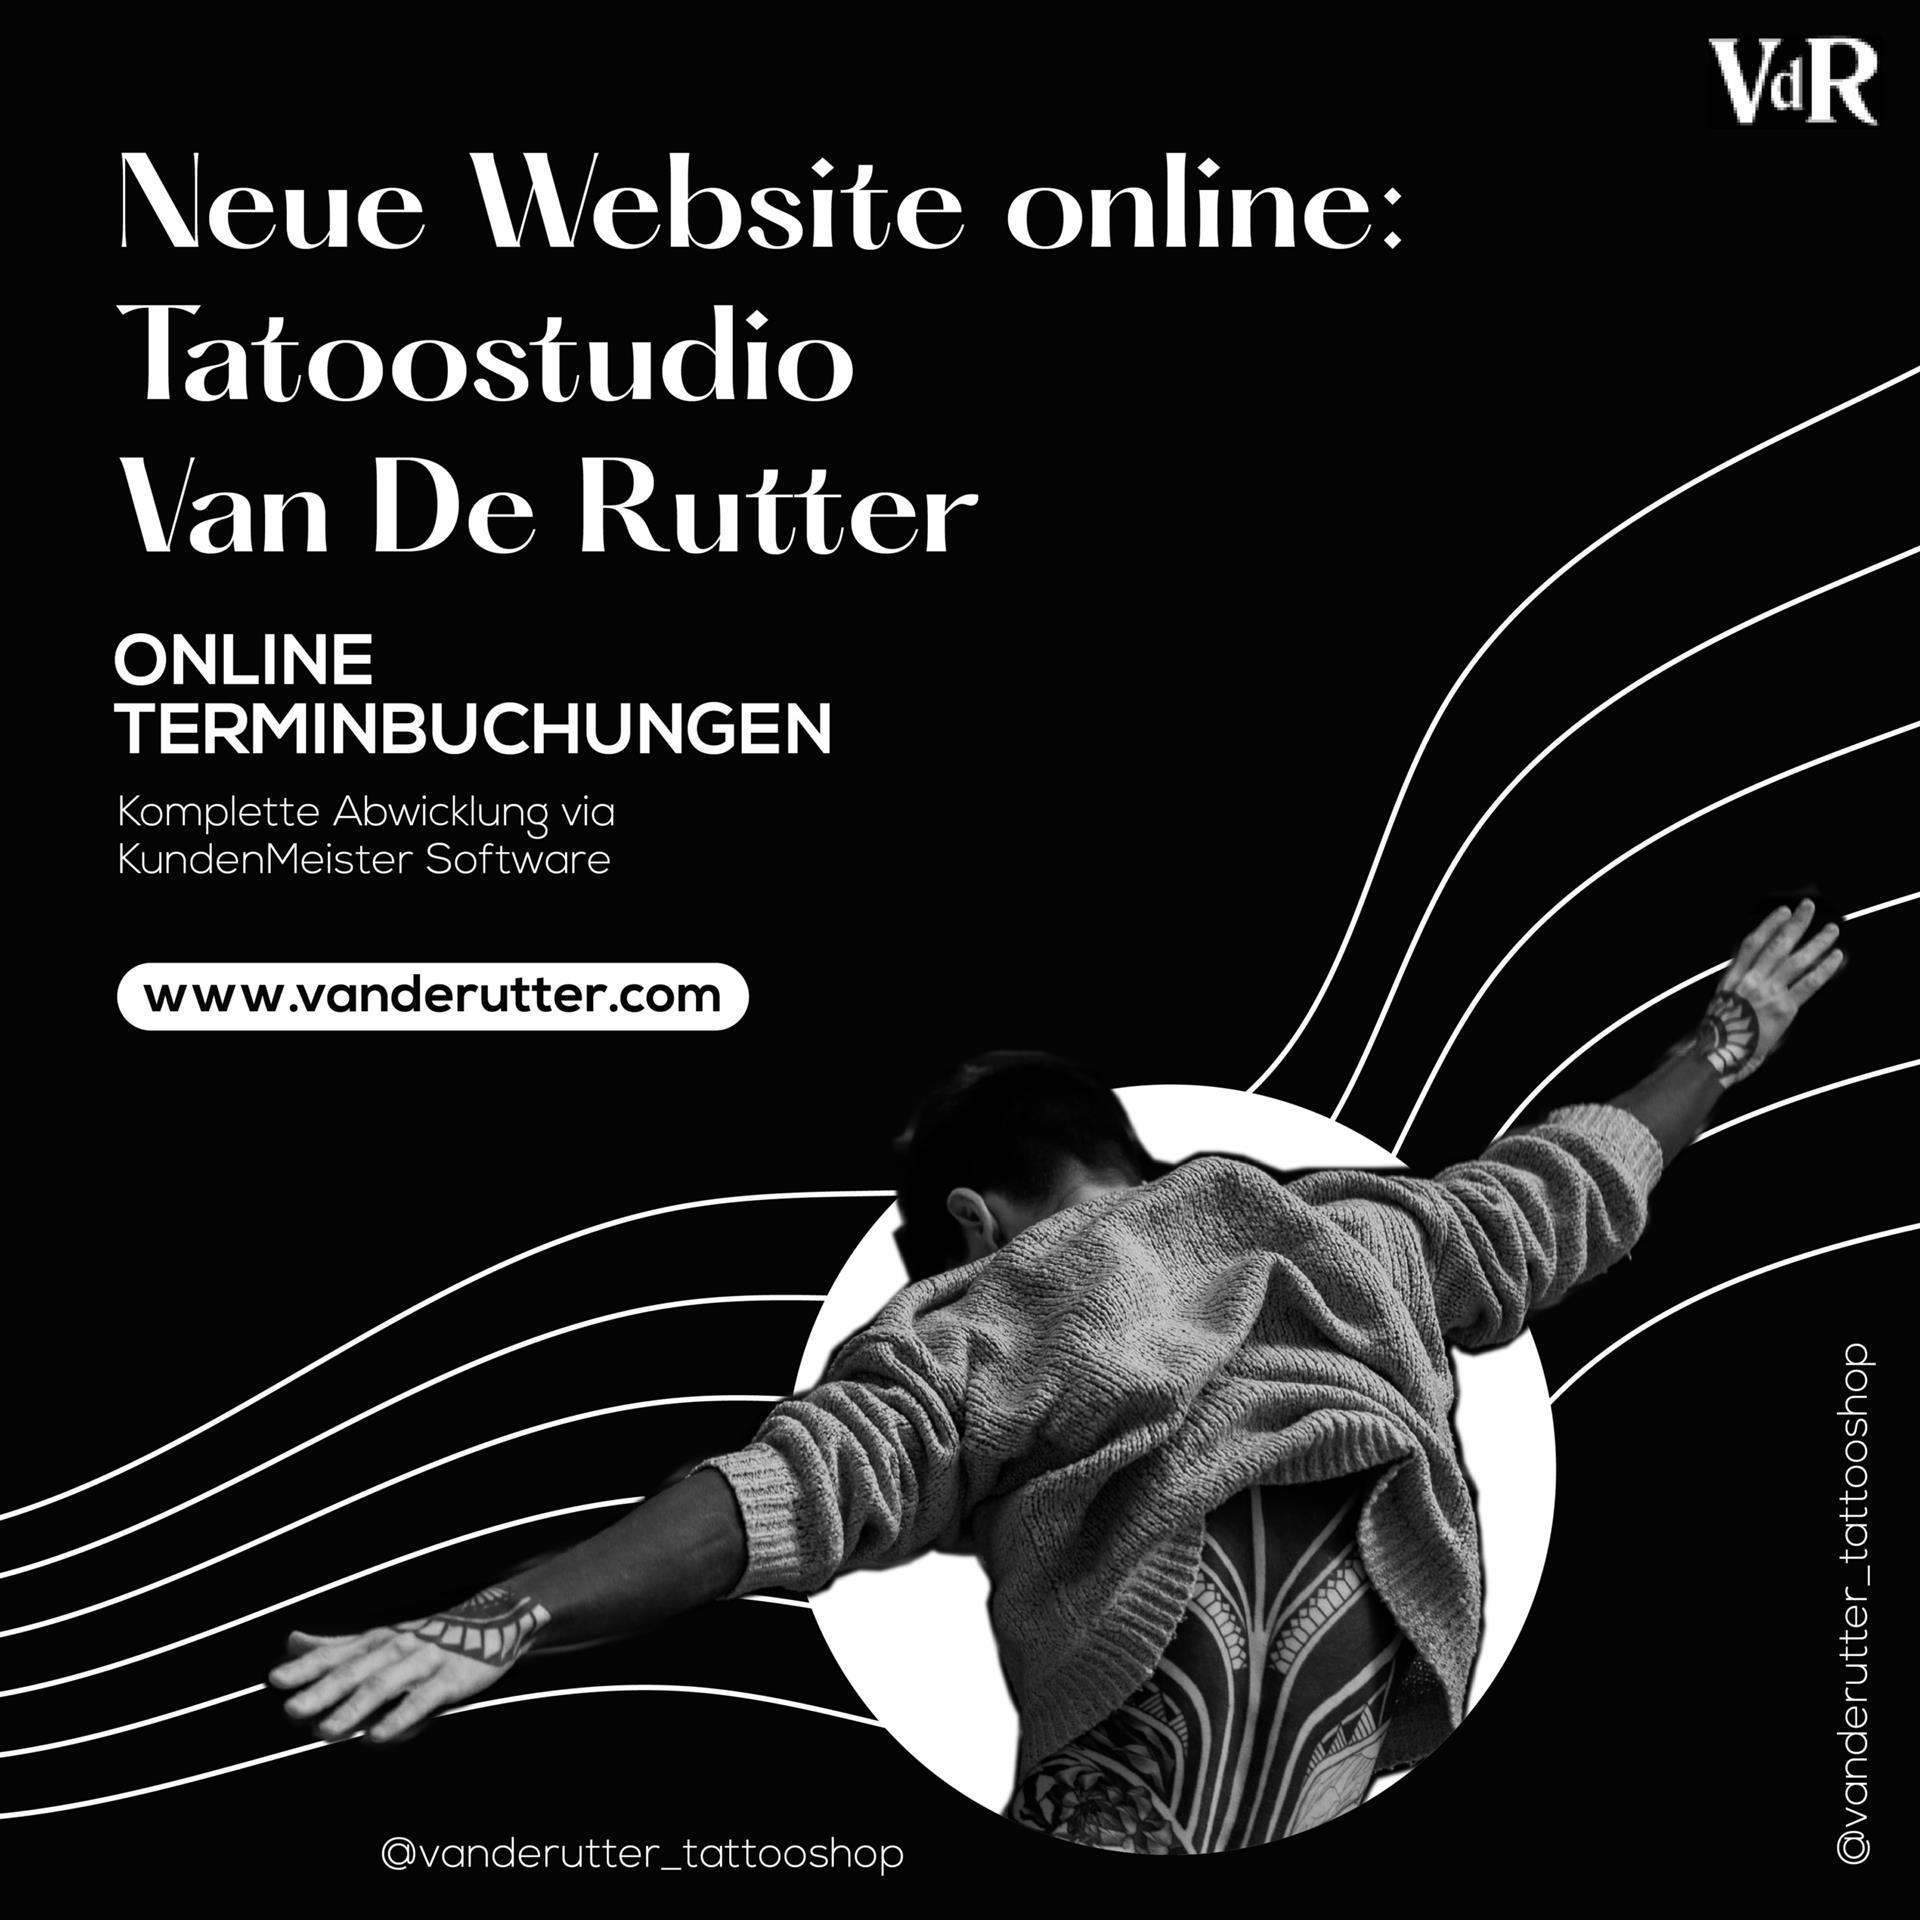 Nouveau site web pour Van de Rutter